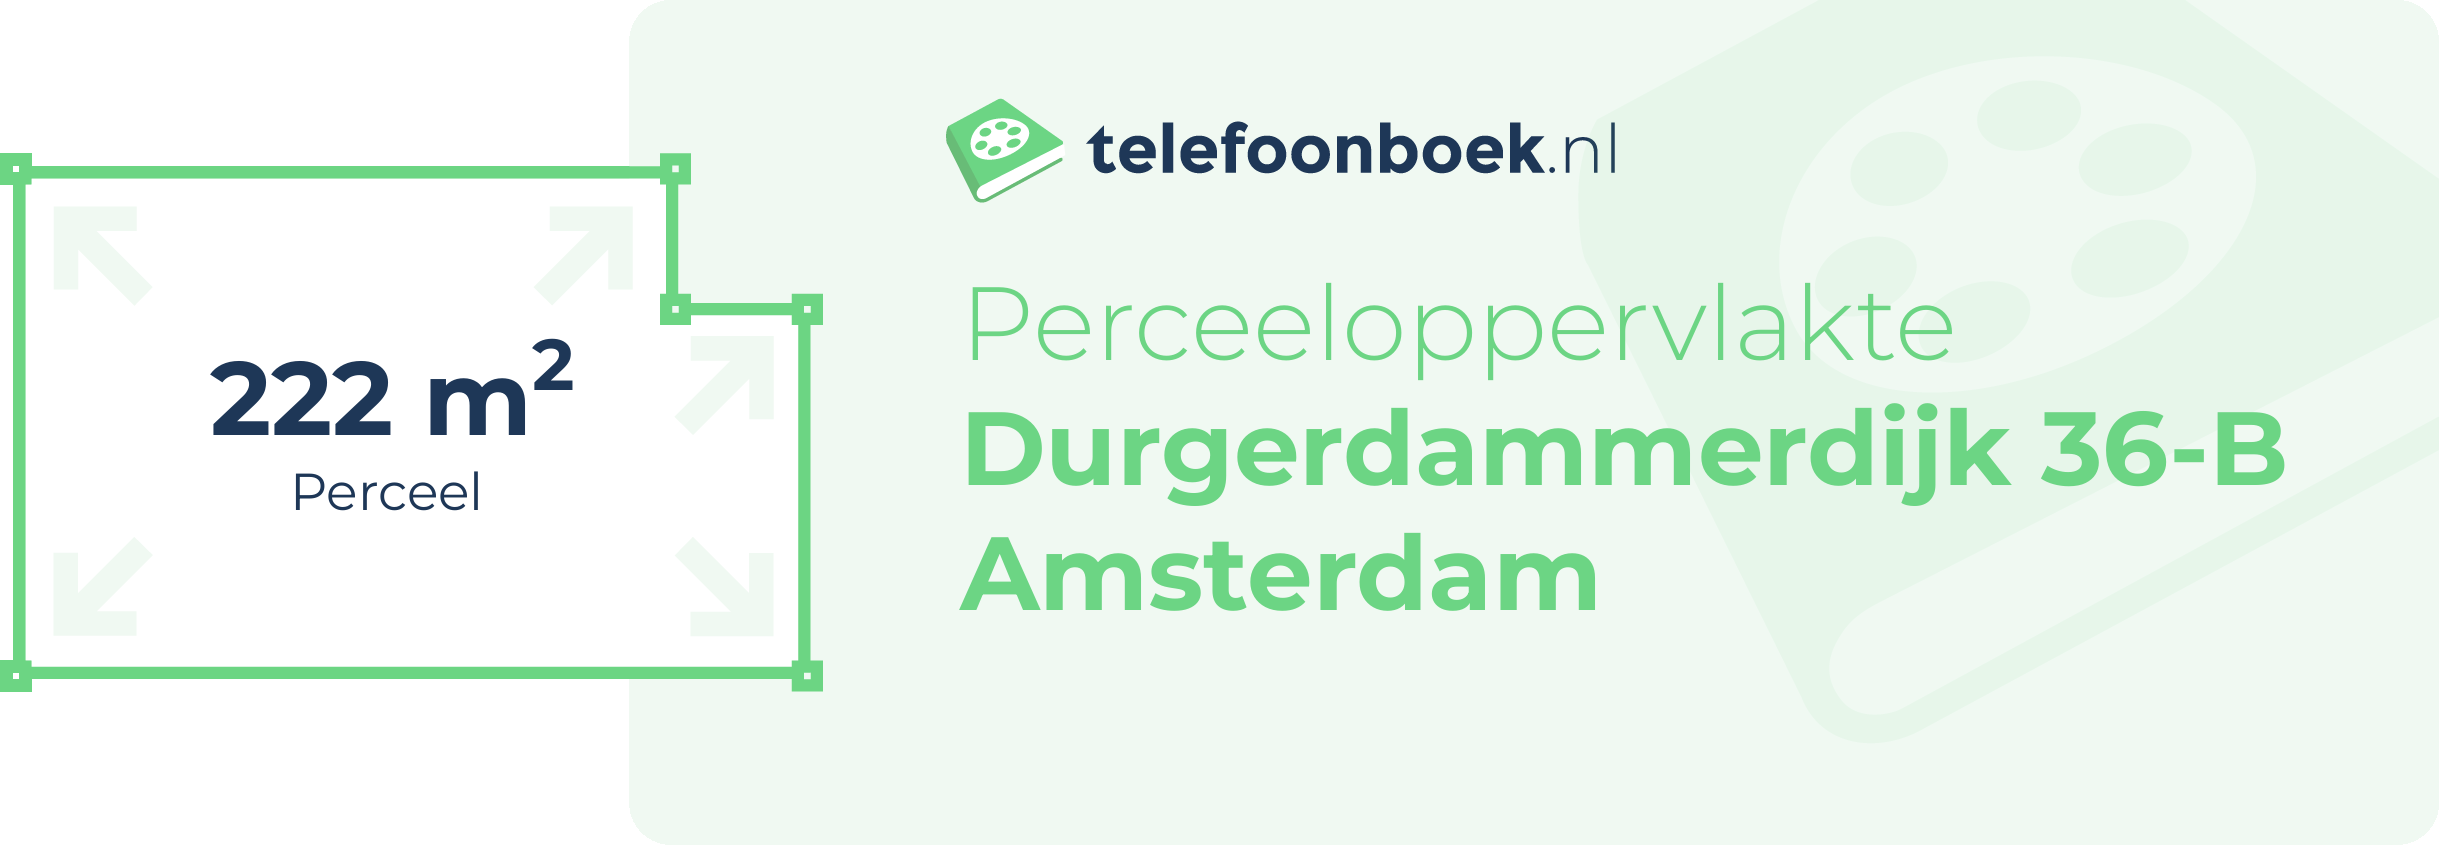 Perceeloppervlakte Durgerdammerdijk 36-B Amsterdam